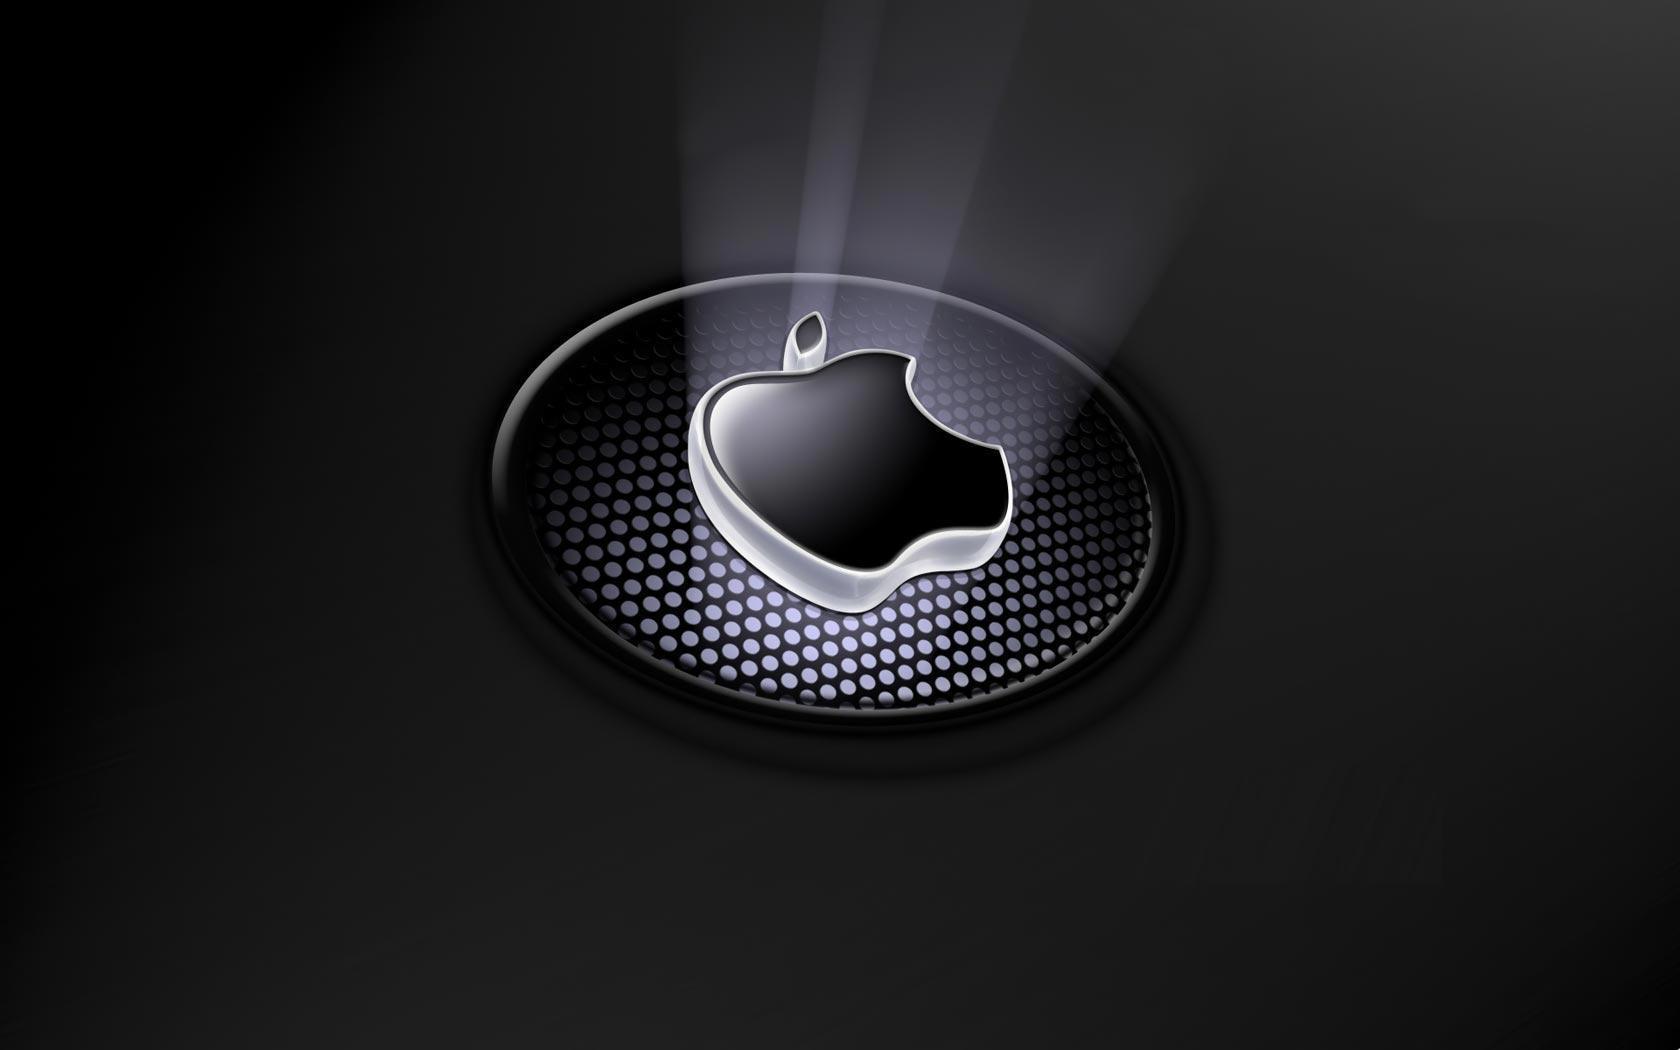 Best Apple Logo Wallpaper Free Best Apple Logo